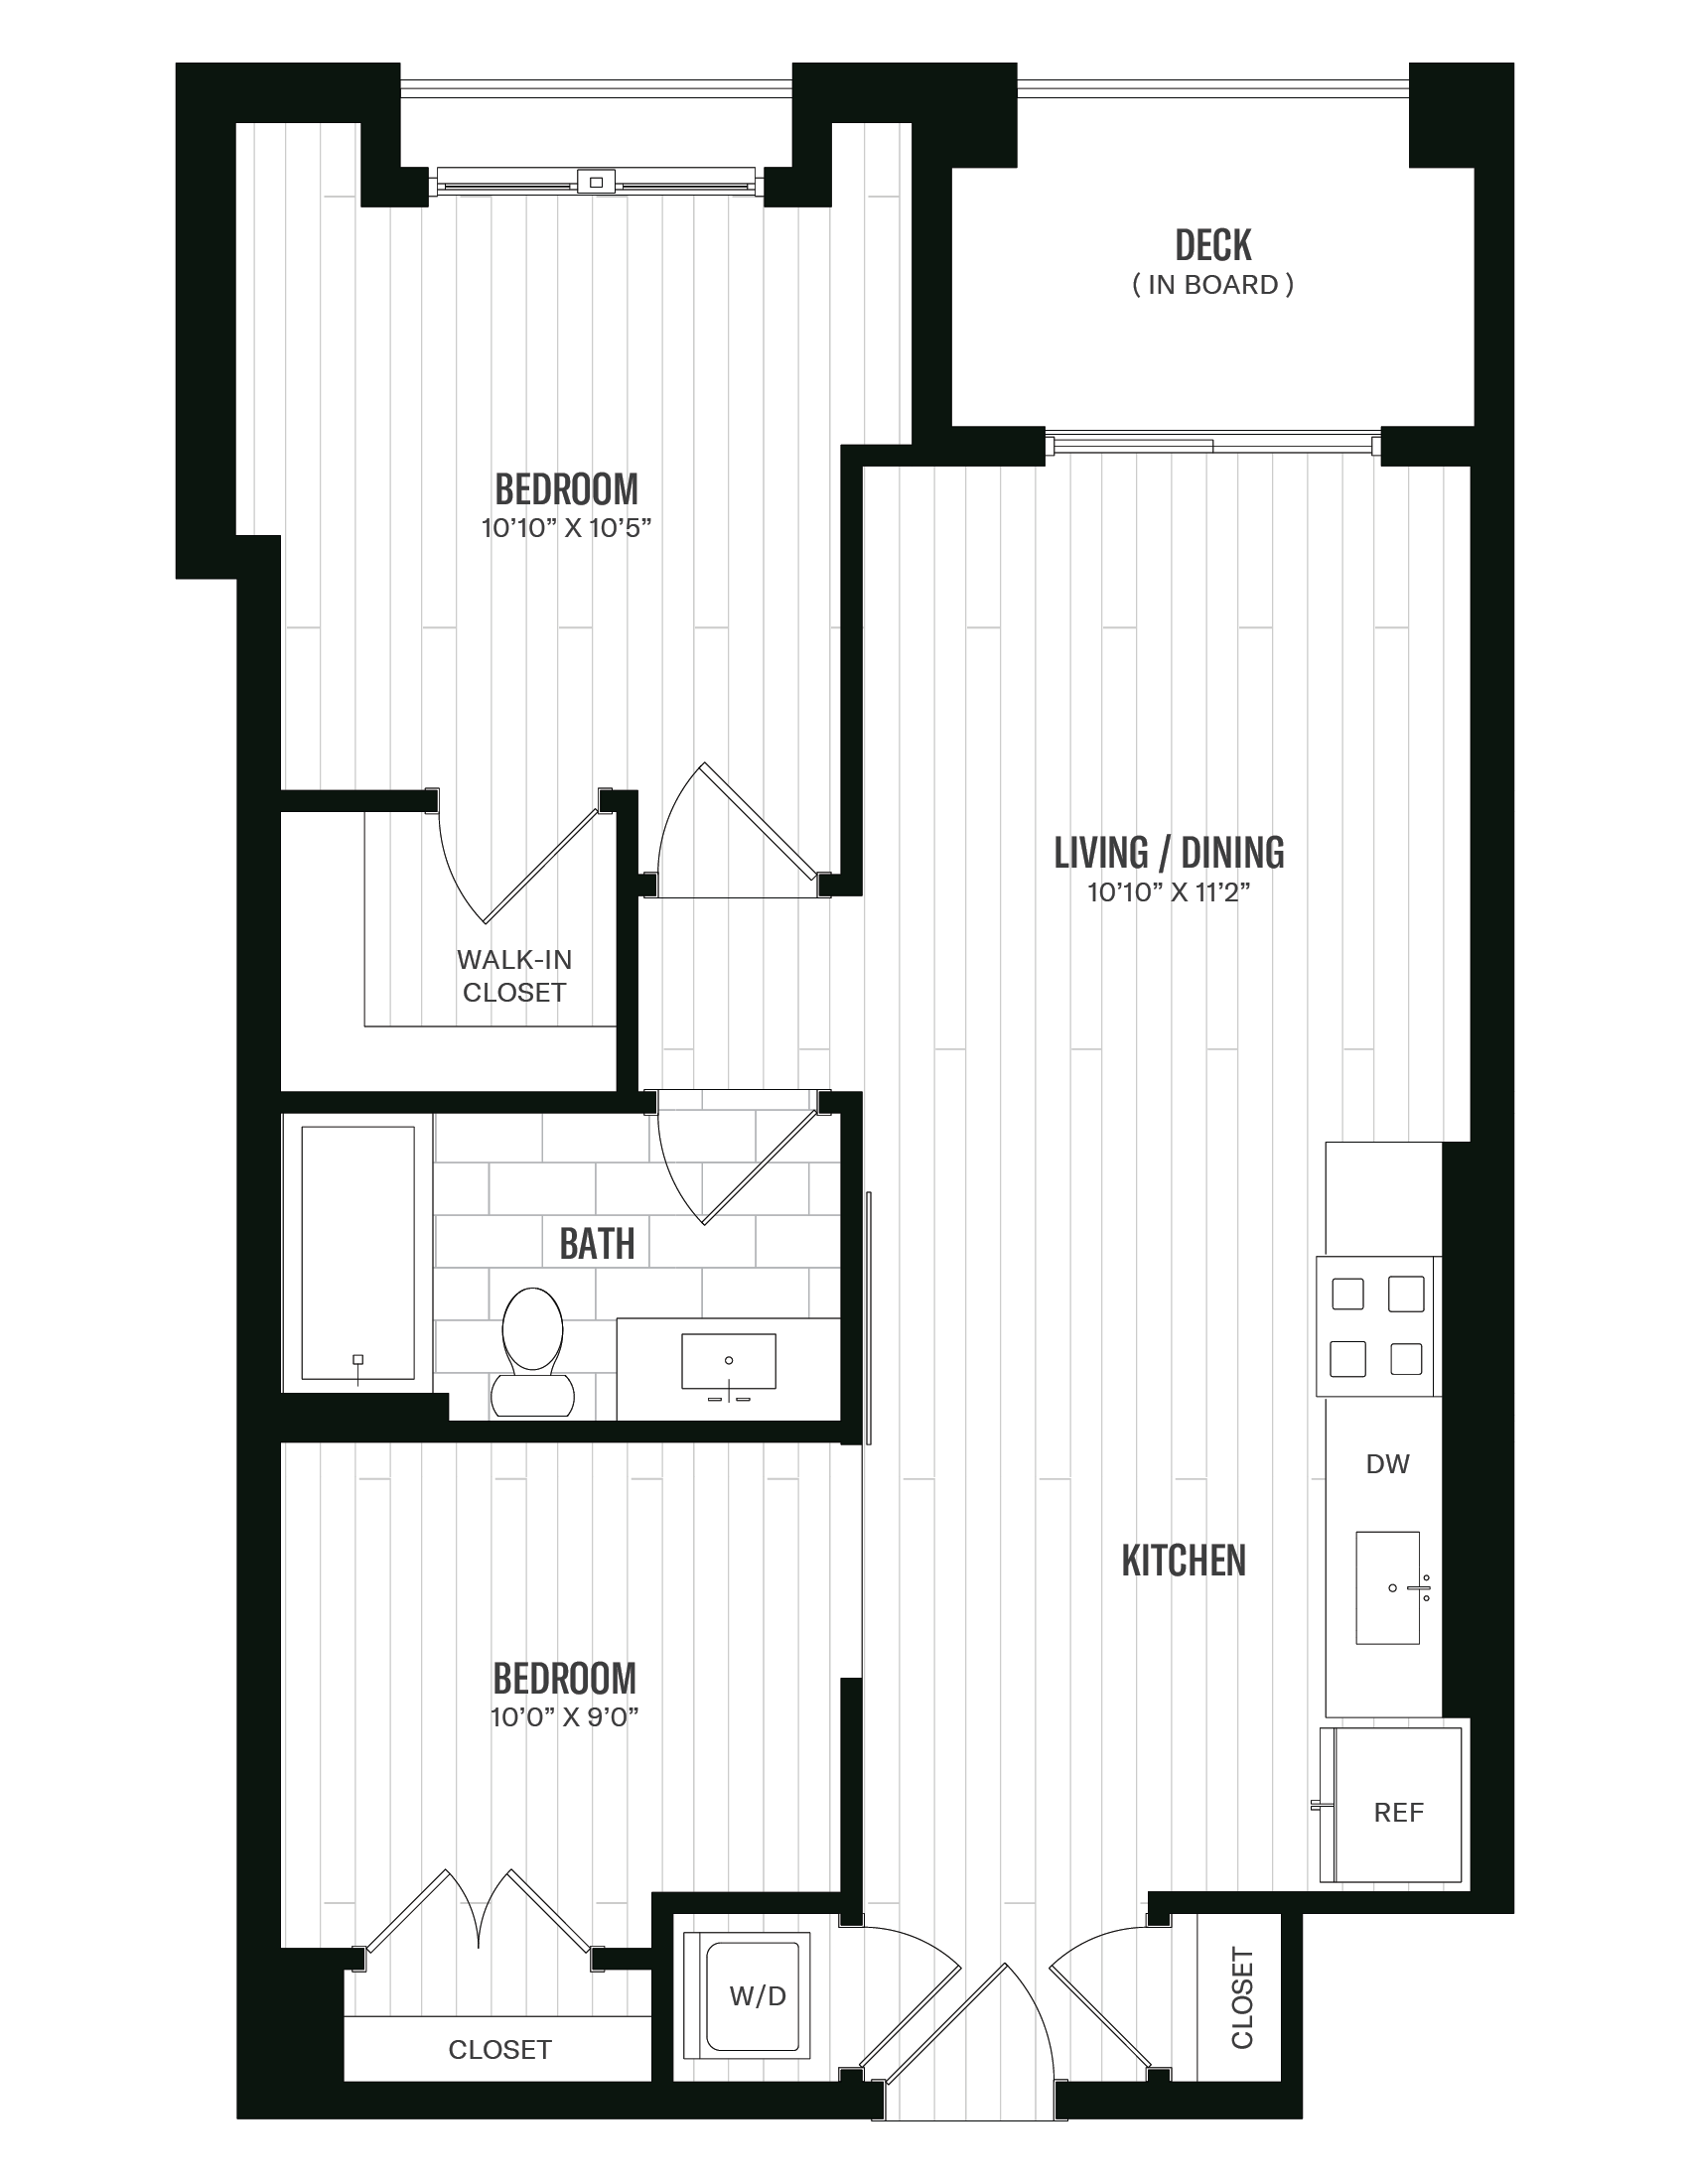 Floorplan image of unit 242